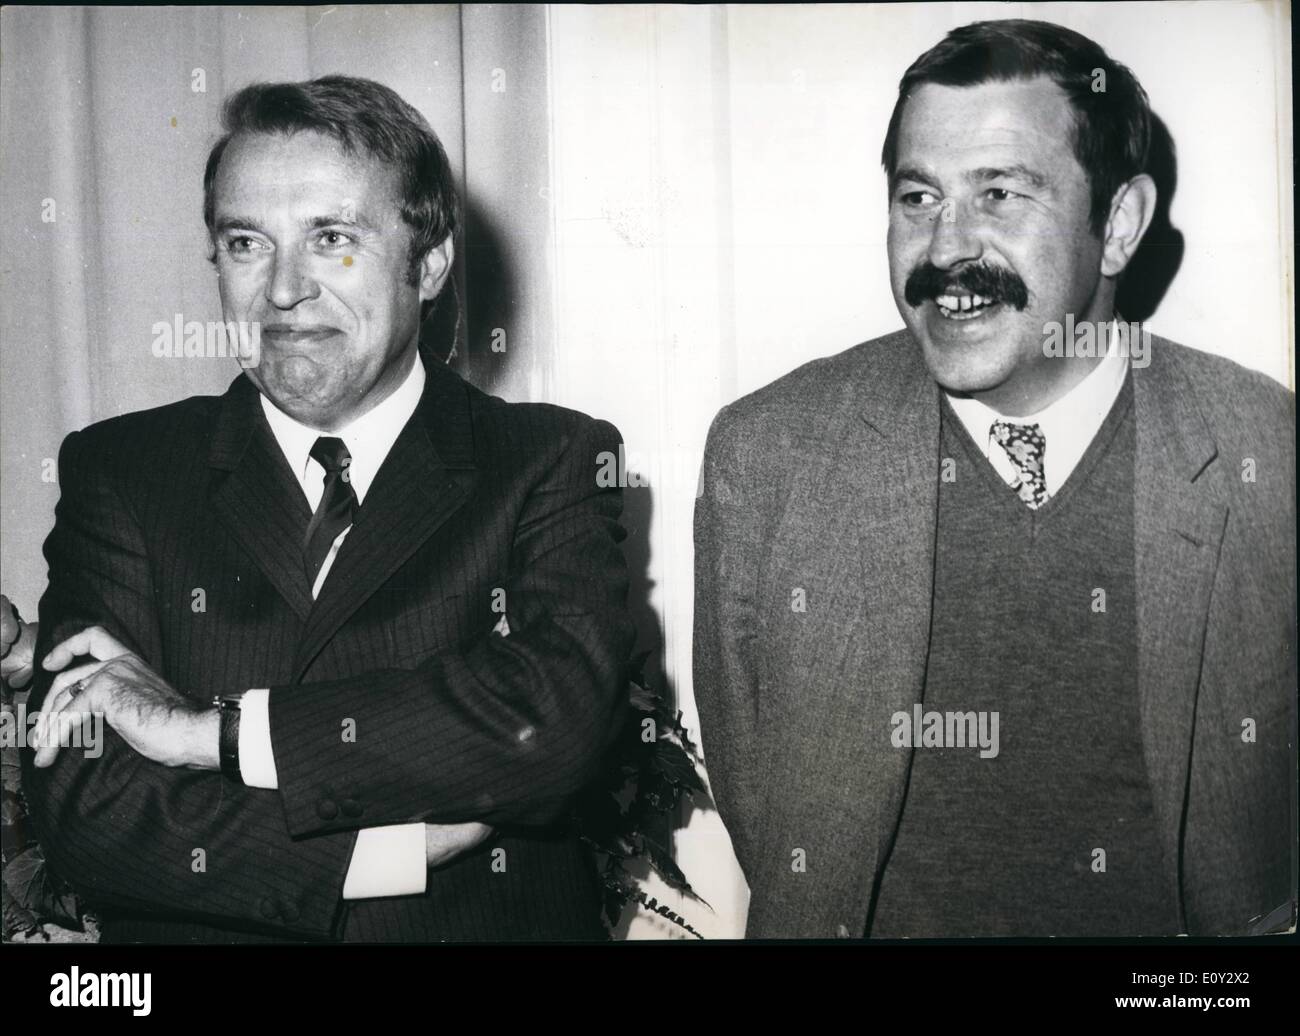 Sett. 09, 1968 - Frankfurt Book Fair autore tedesco Guenter Grass destra e l'autore cecoslovacco Pavel Kohout, che hanno aderito Foto Stock